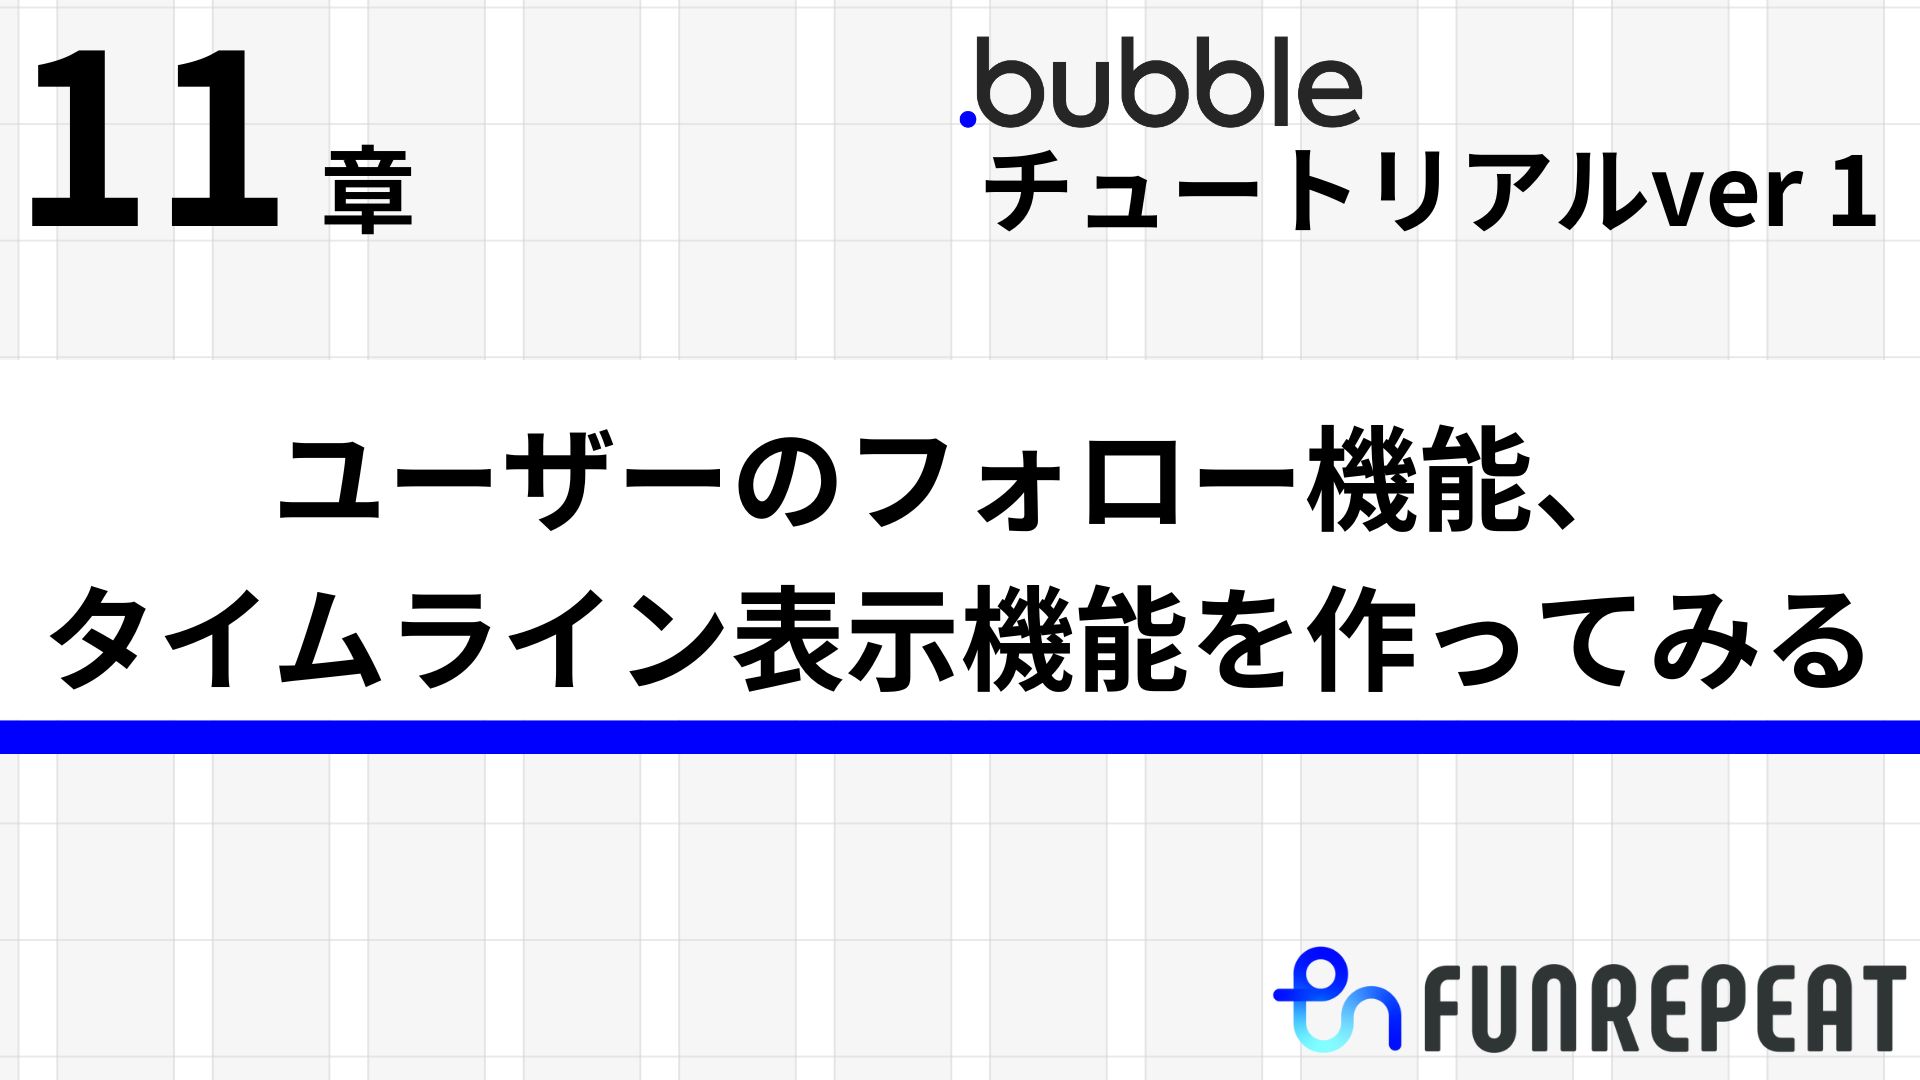 bubbleチュートリアルver1第11章 ユーザーのフォロー機能、タイムライン表示機能をつくってみる